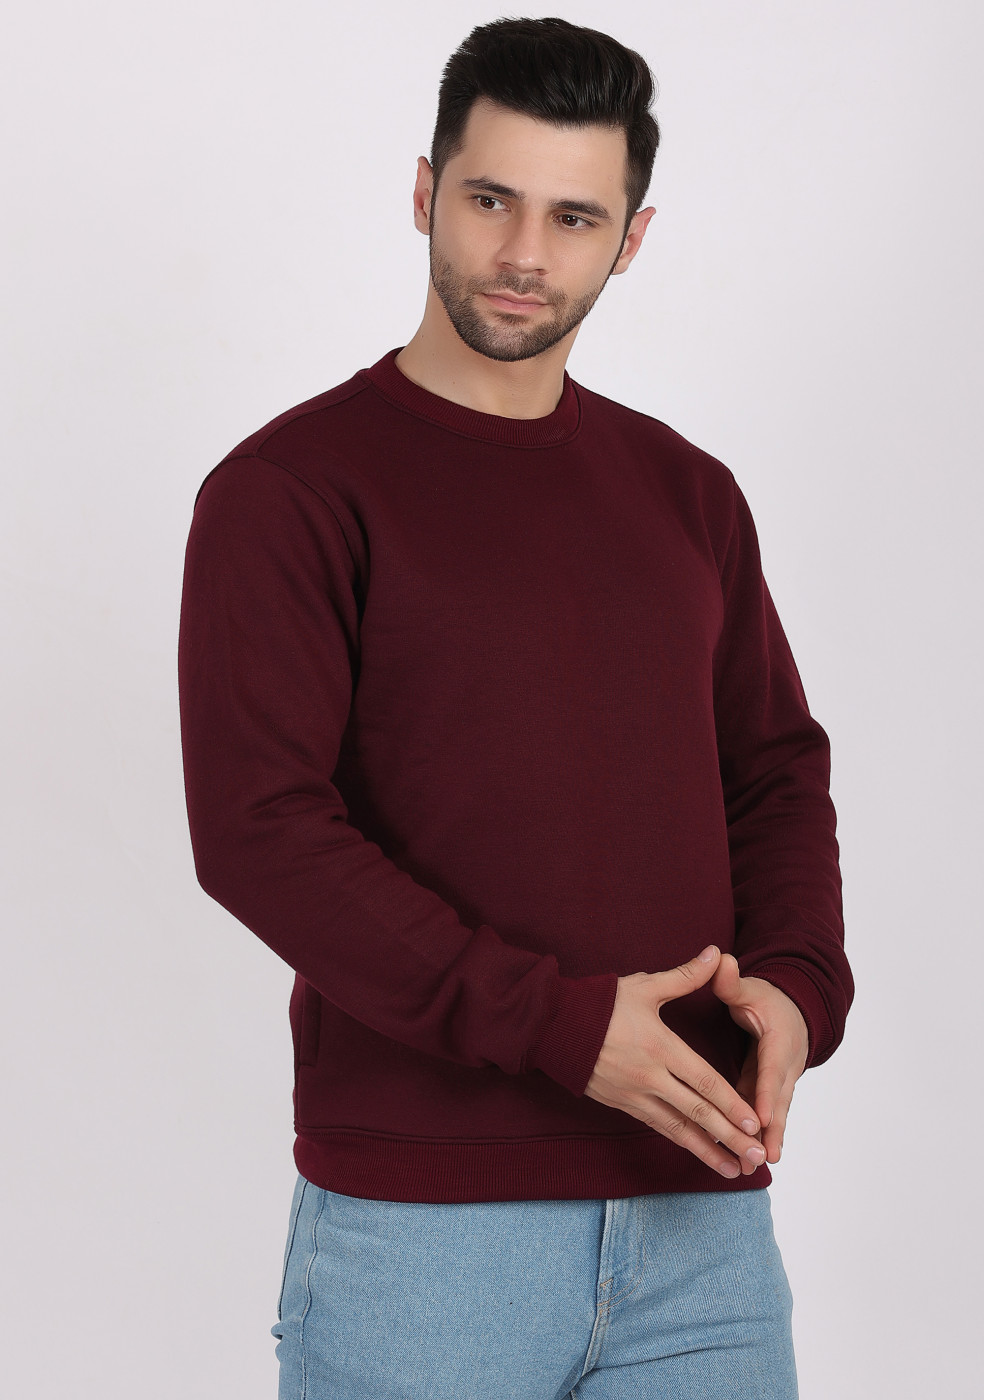 HUKH Wine Color Sweatshirt For Men